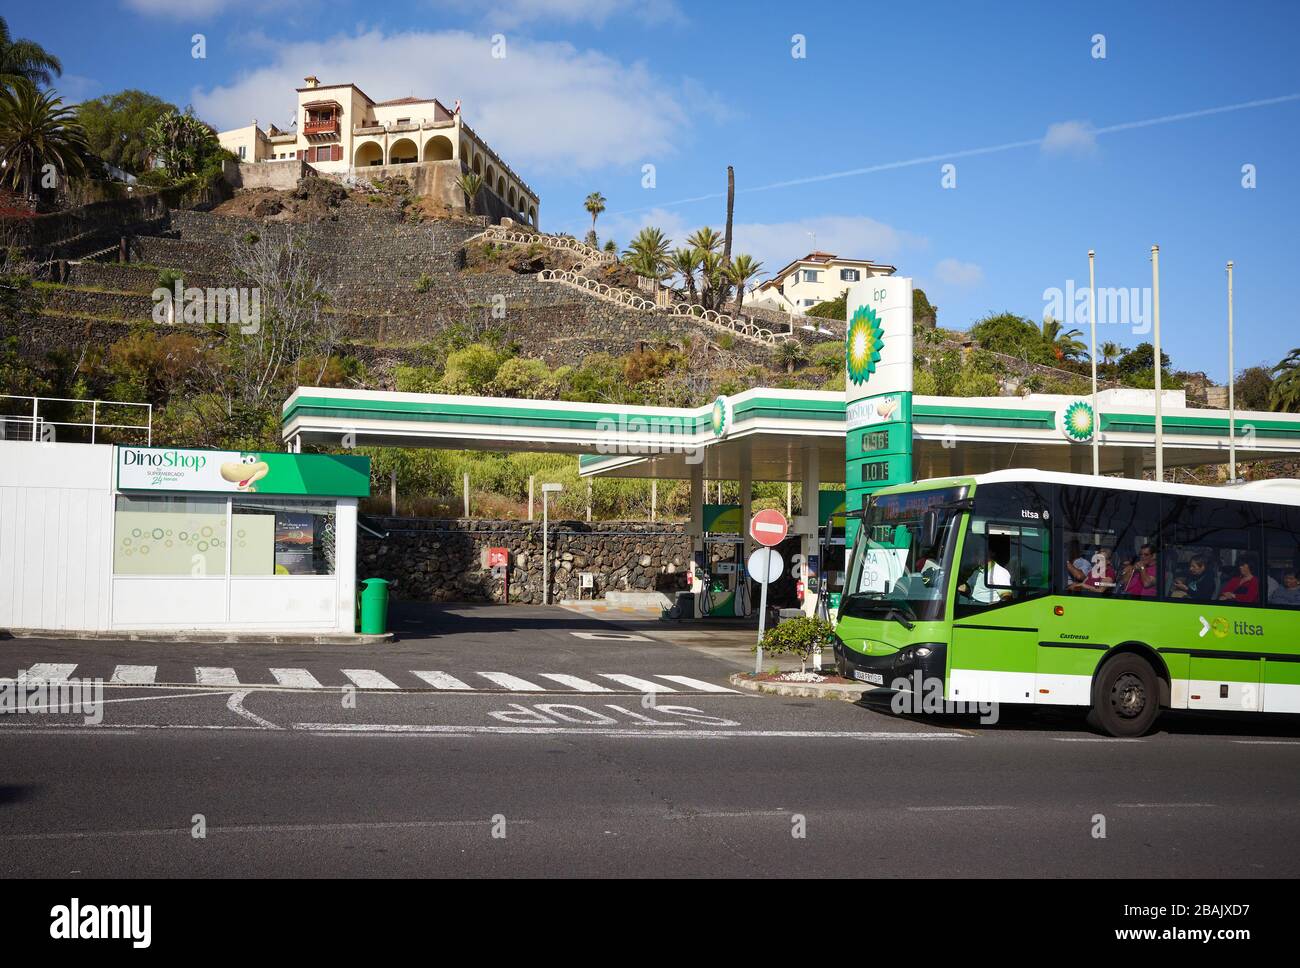 Tengo una clase de ingles lotería Fanático Puerto de la Cruz, Tenerife, Spain - March 29, 2019: Bus passing BP Gas  Station at Botanico Road Stock Photo - Alamy